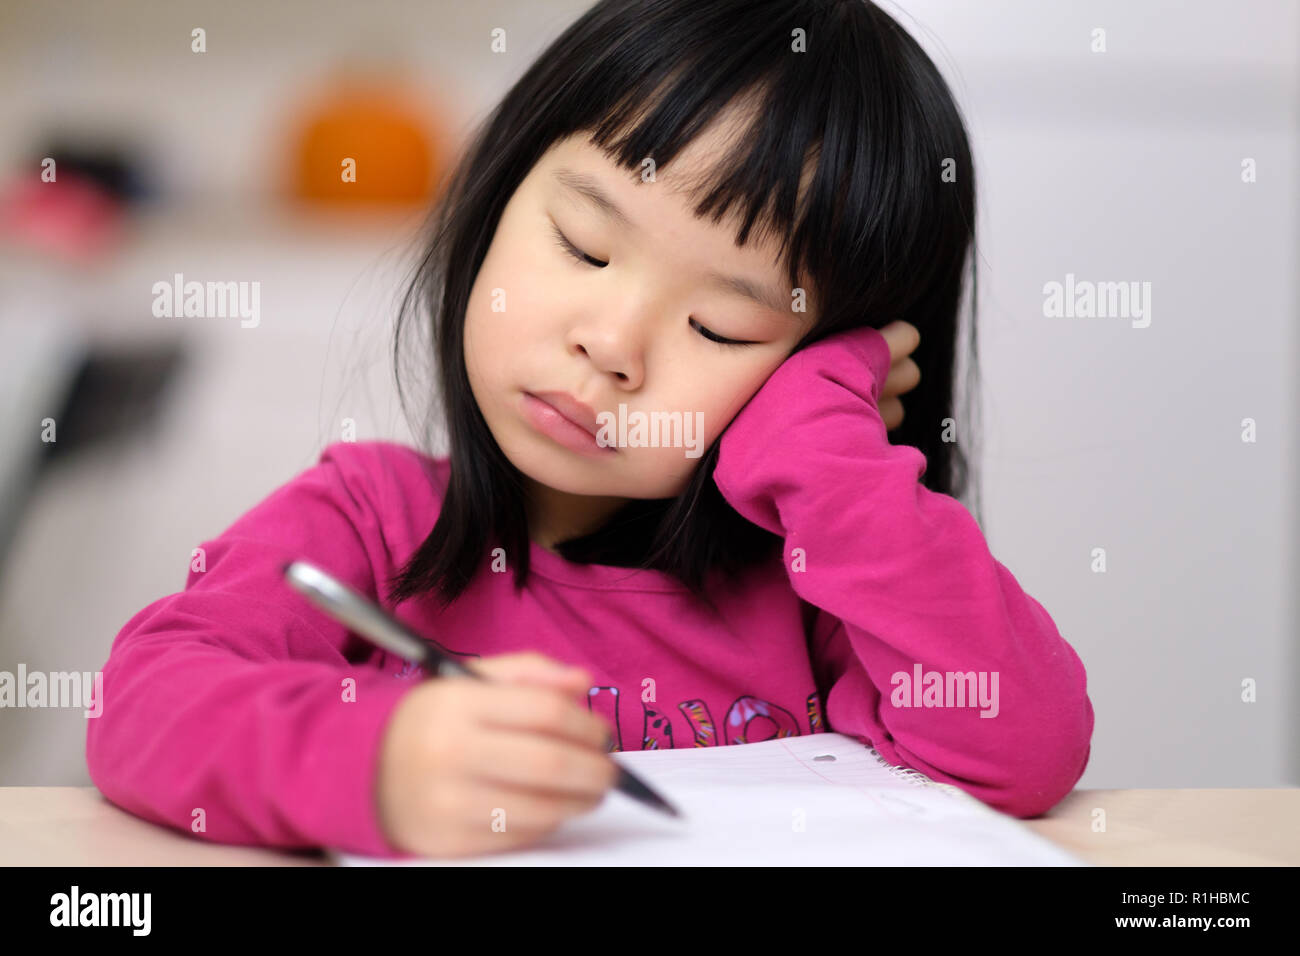 Frühkindliche Bildung Konzept mit kleinen Mädchen schreiben lernen Stockfoto